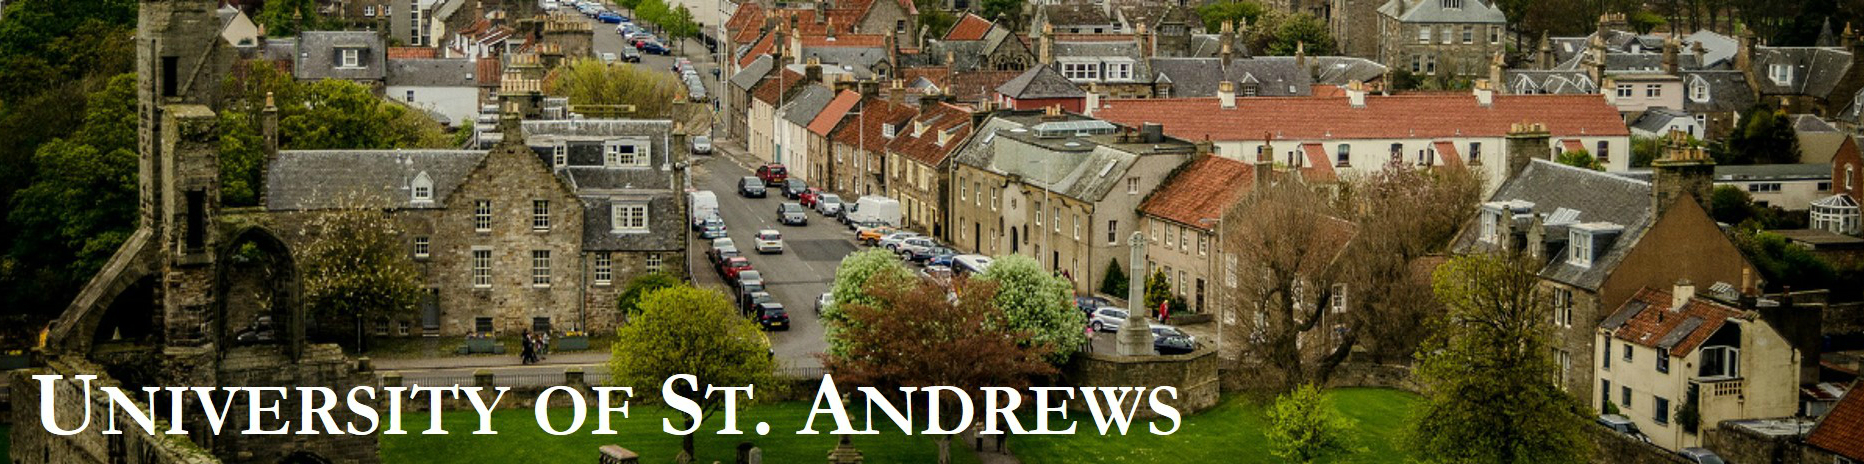 St. Andrews banner